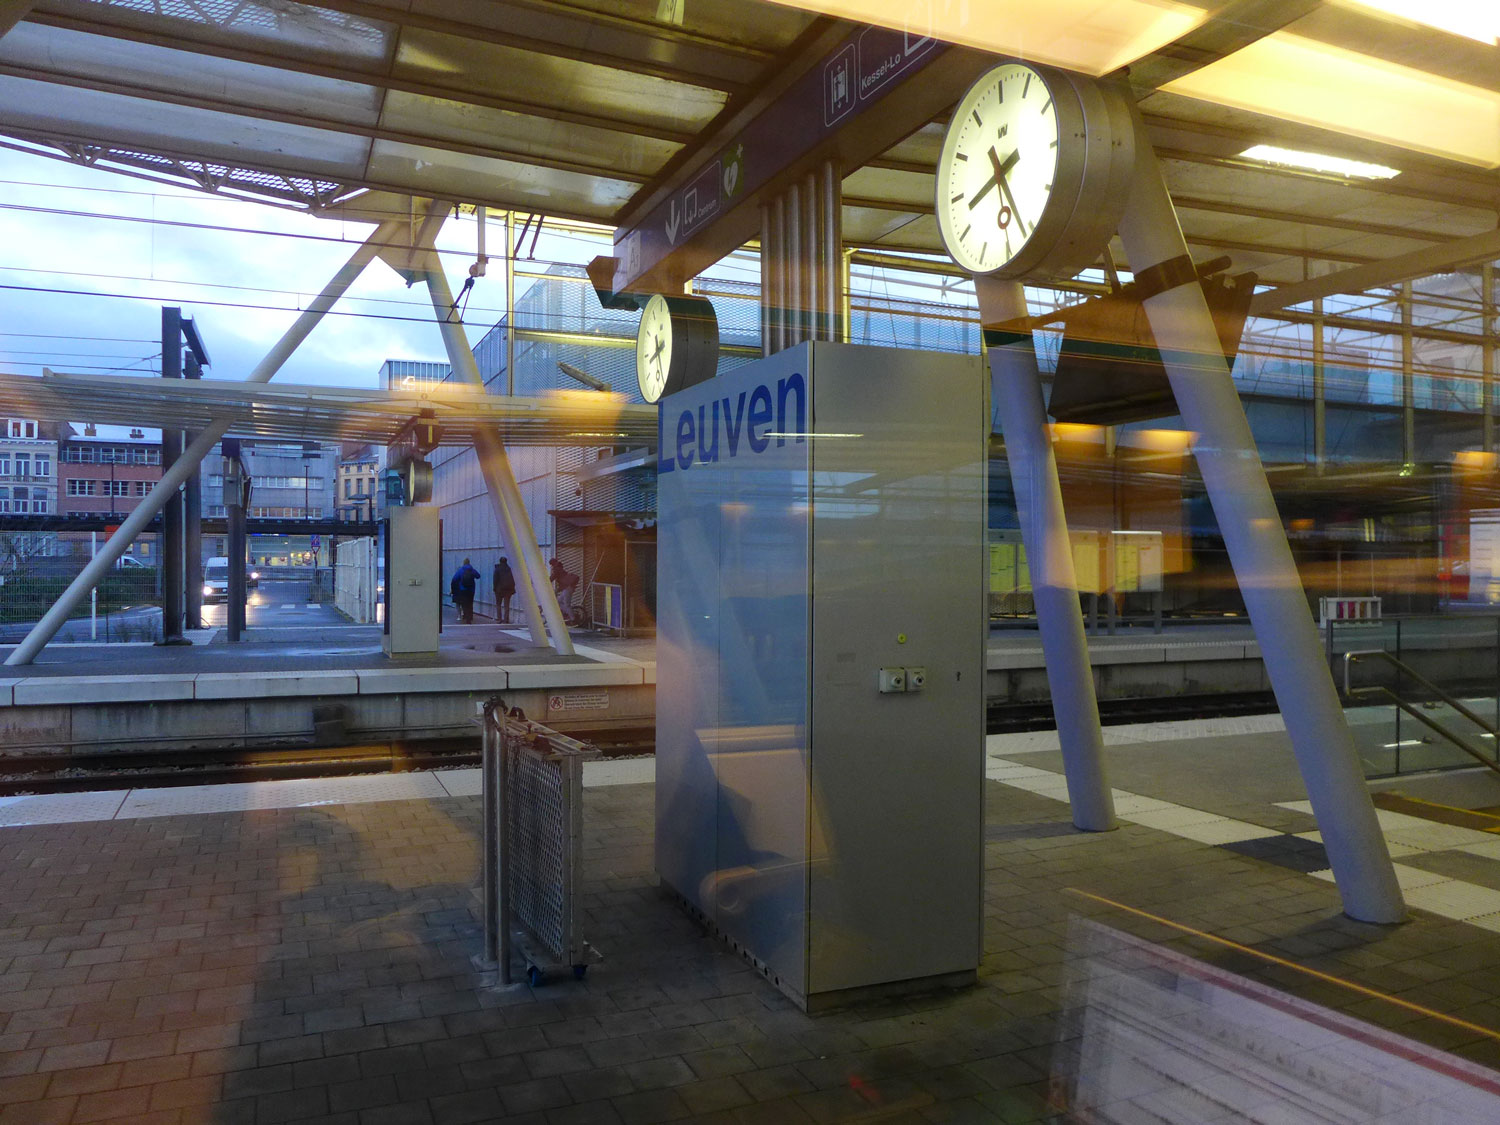 Le train arrive à Louvain, à l’Est de Bruxelles. C’est une grande ville universitaire et la capitale de la bière en Belgique © Globe Reporters